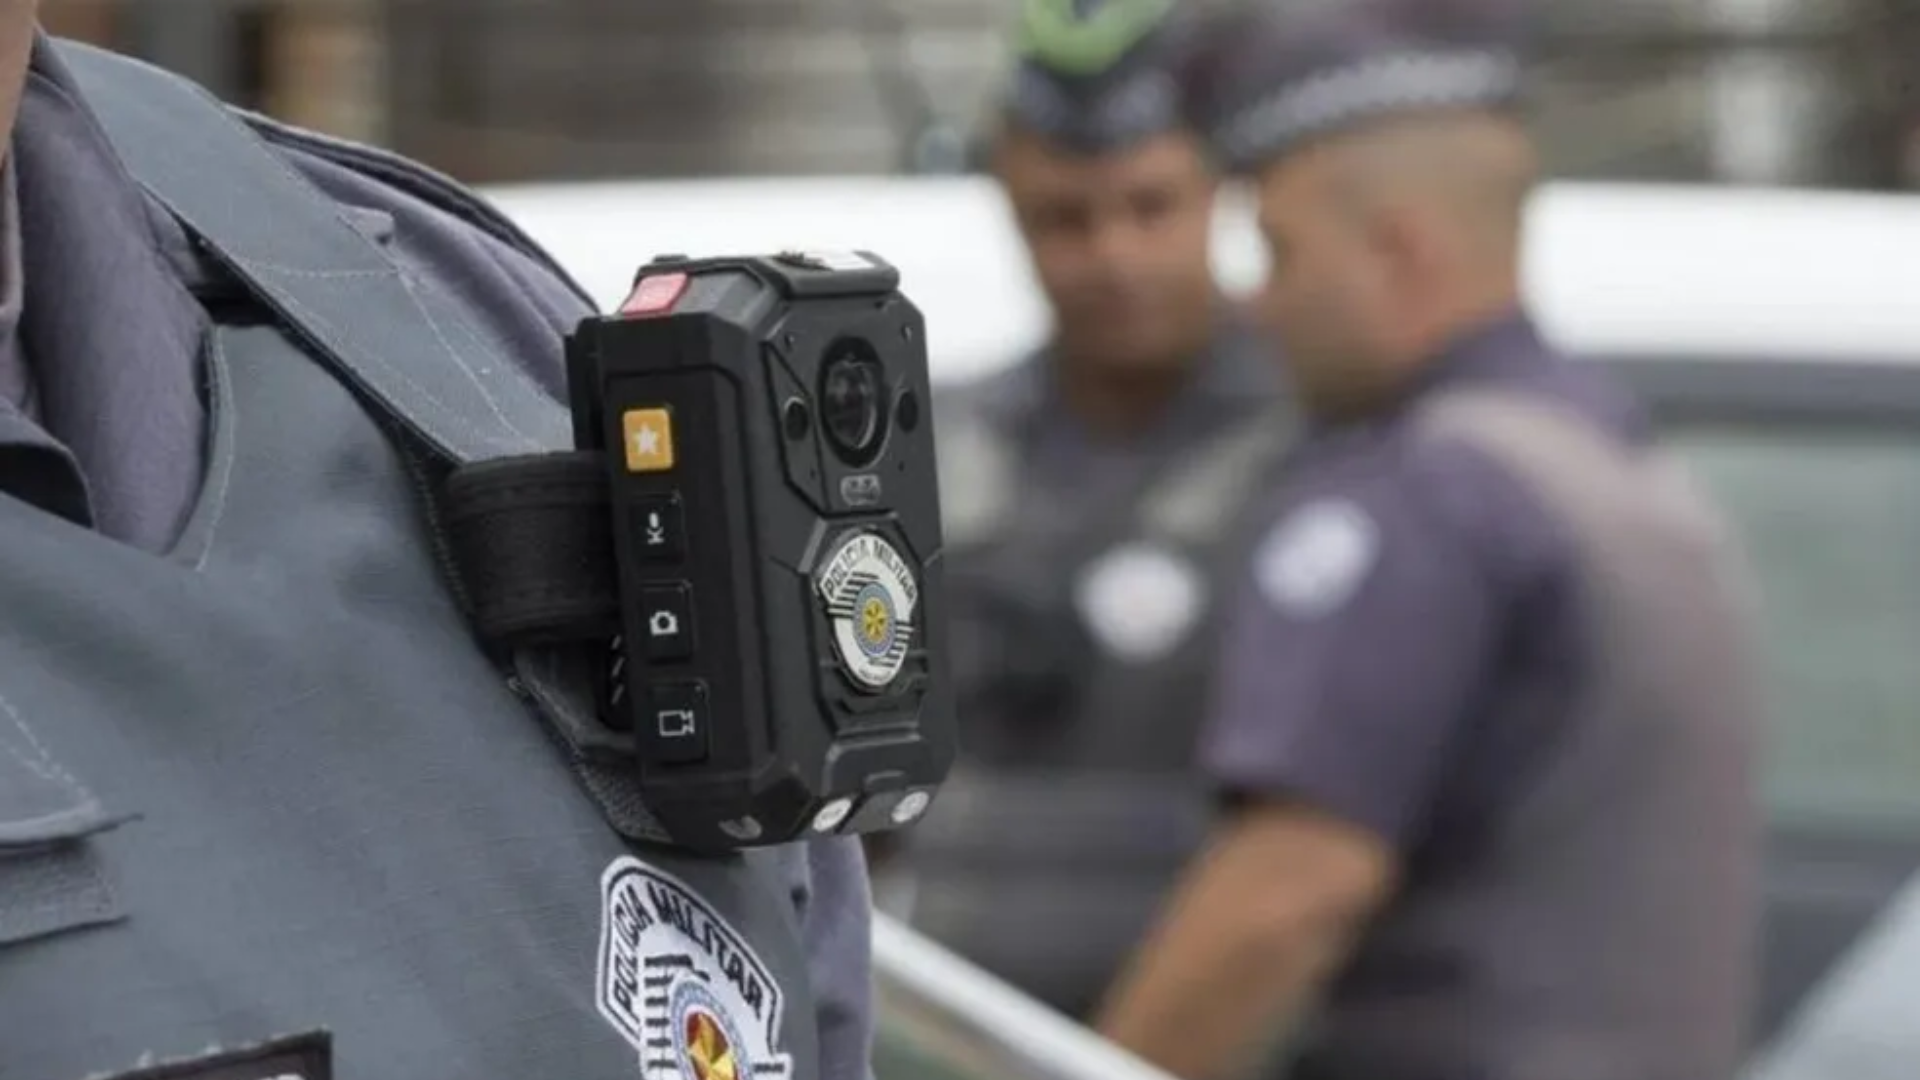 Sistema de câmeras com reconhecimento facial da Polícia Militar chega à Rodoviária do Rio